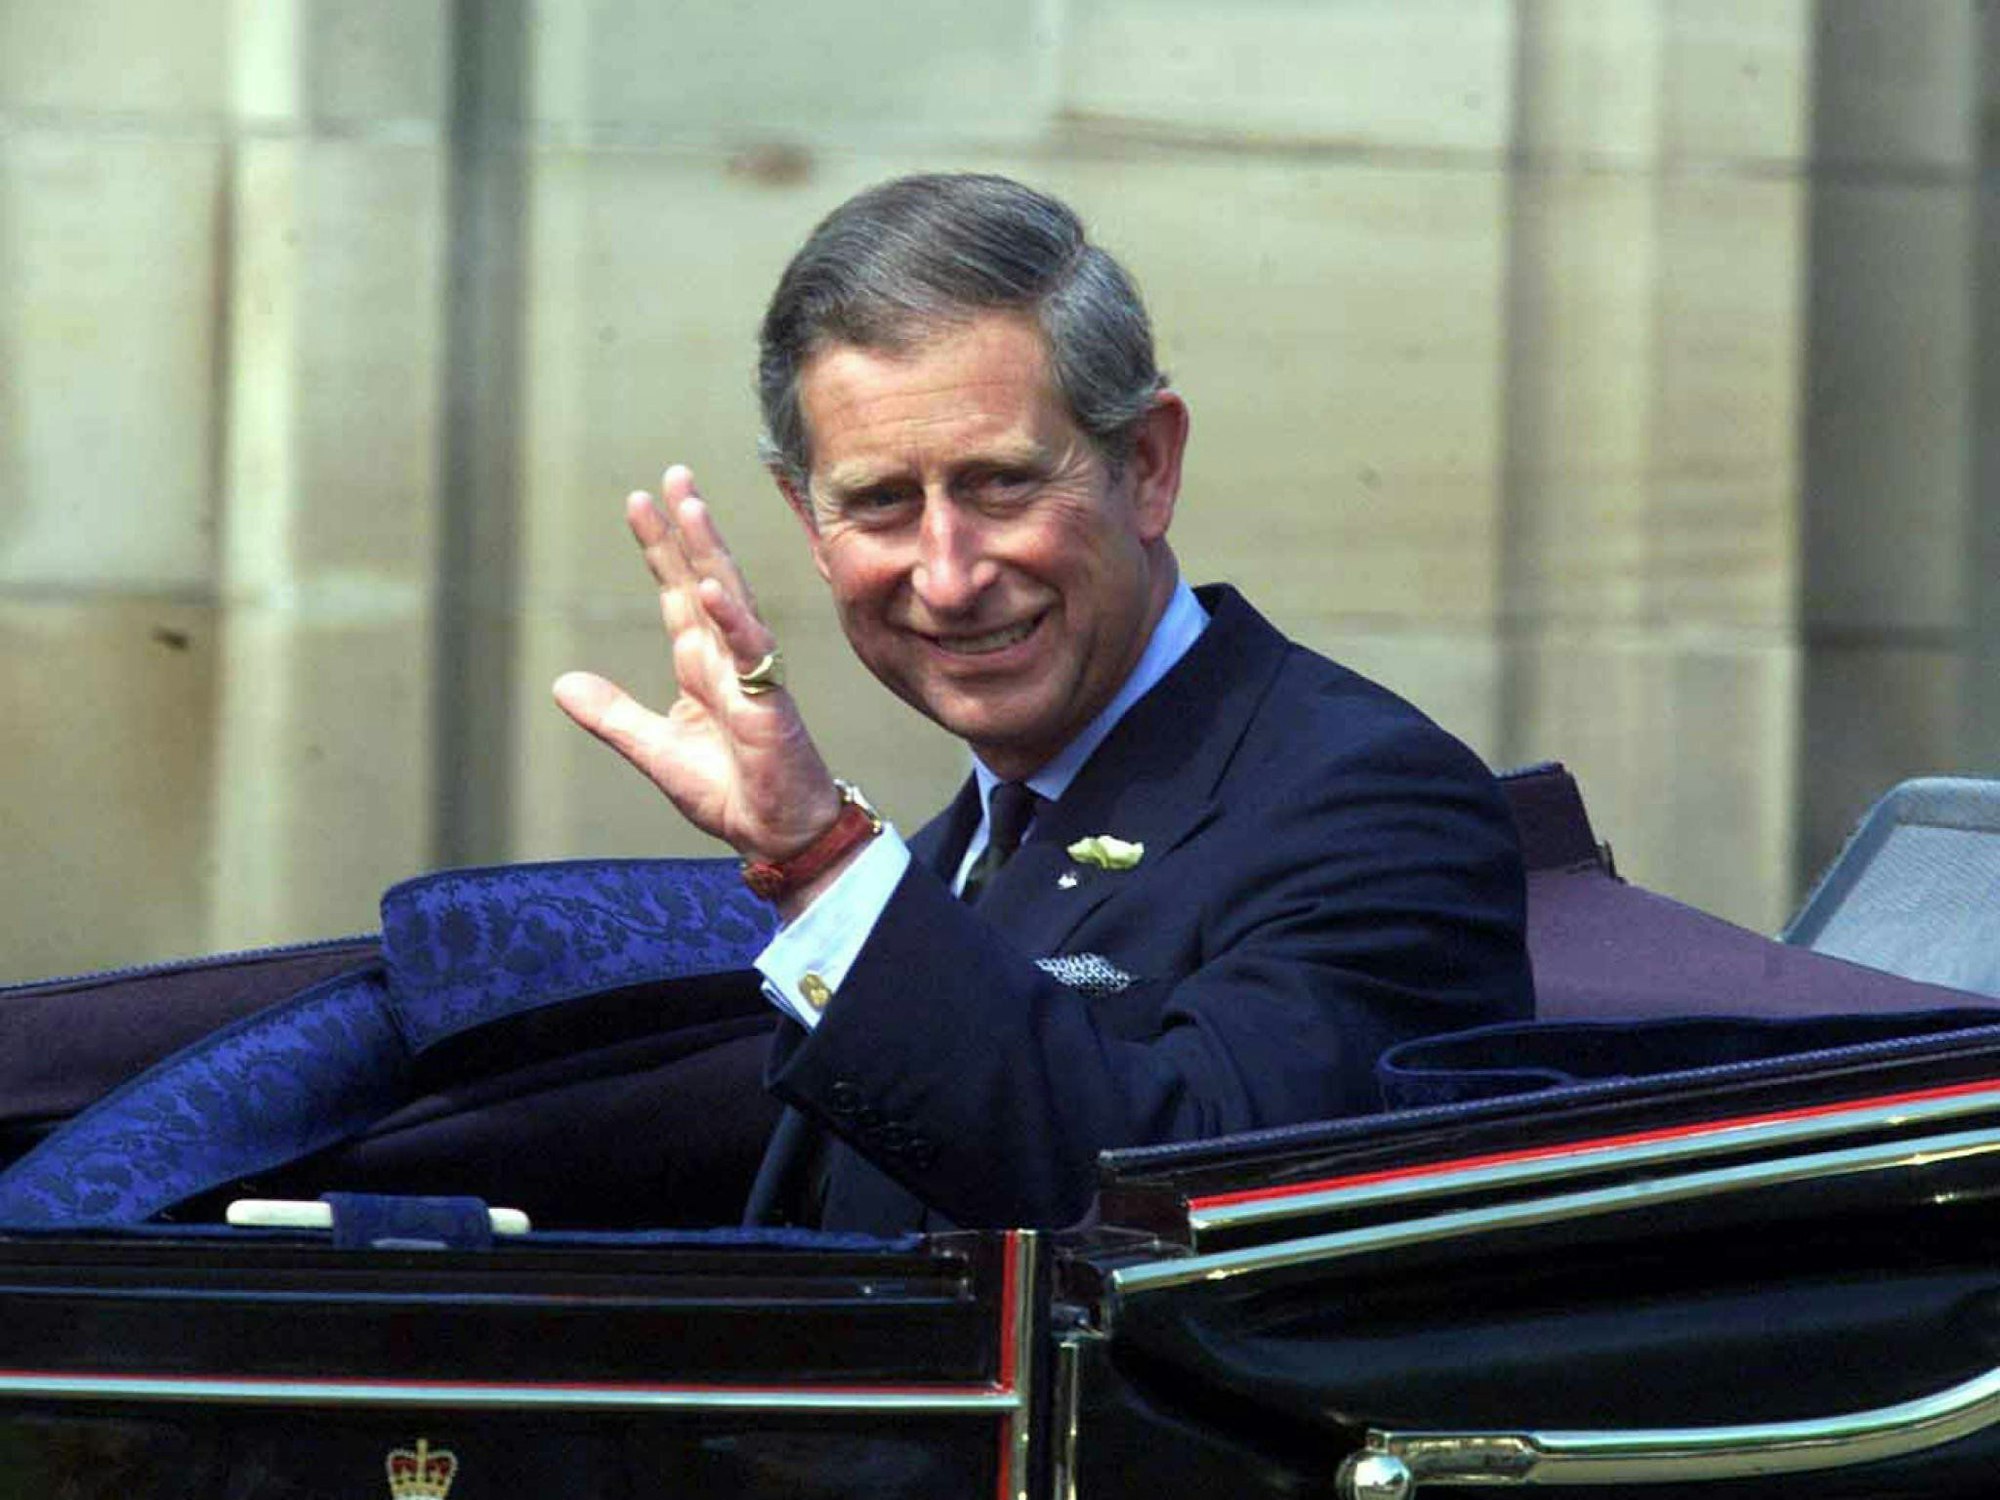 Prinz Charles winkt im Auto sitzend der Menge zu.